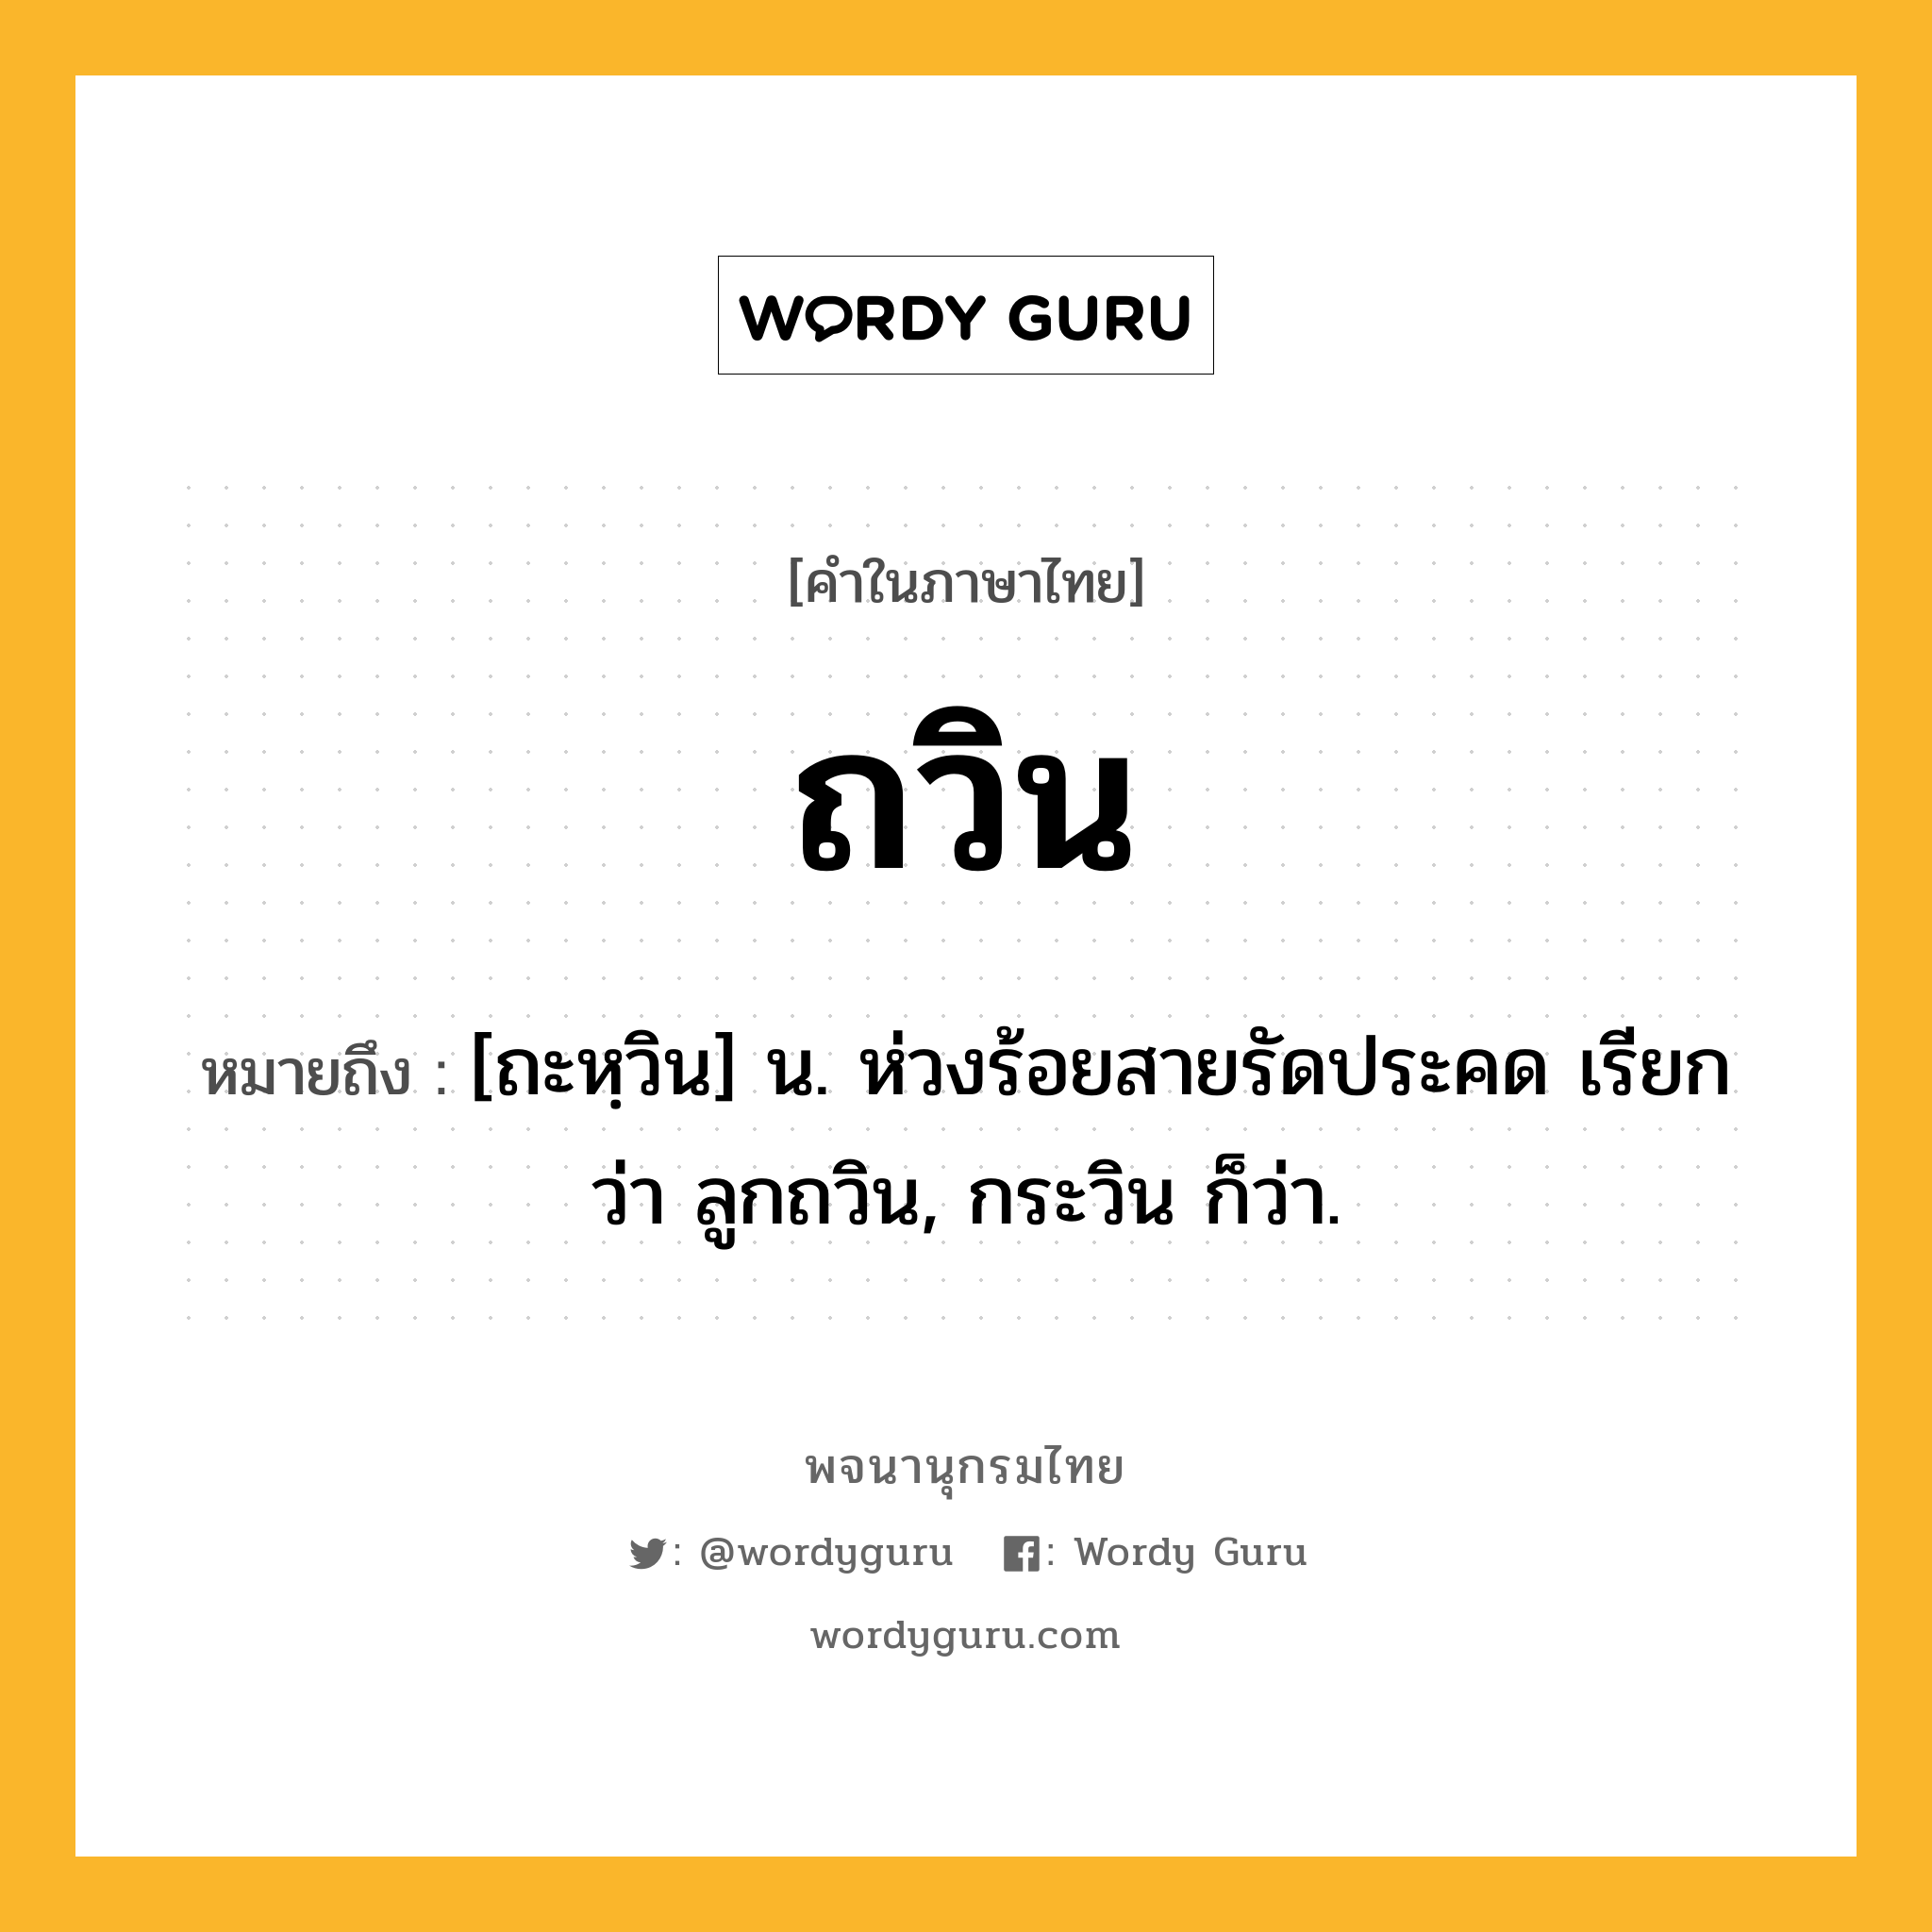 ถวิน หมายถึงอะไร?, คำในภาษาไทย ถวิน หมายถึง [ถะหฺวิน] น. ห่วงร้อยสายรัดประคด เรียกว่า ลูกถวิน, กระวิน ก็ว่า.